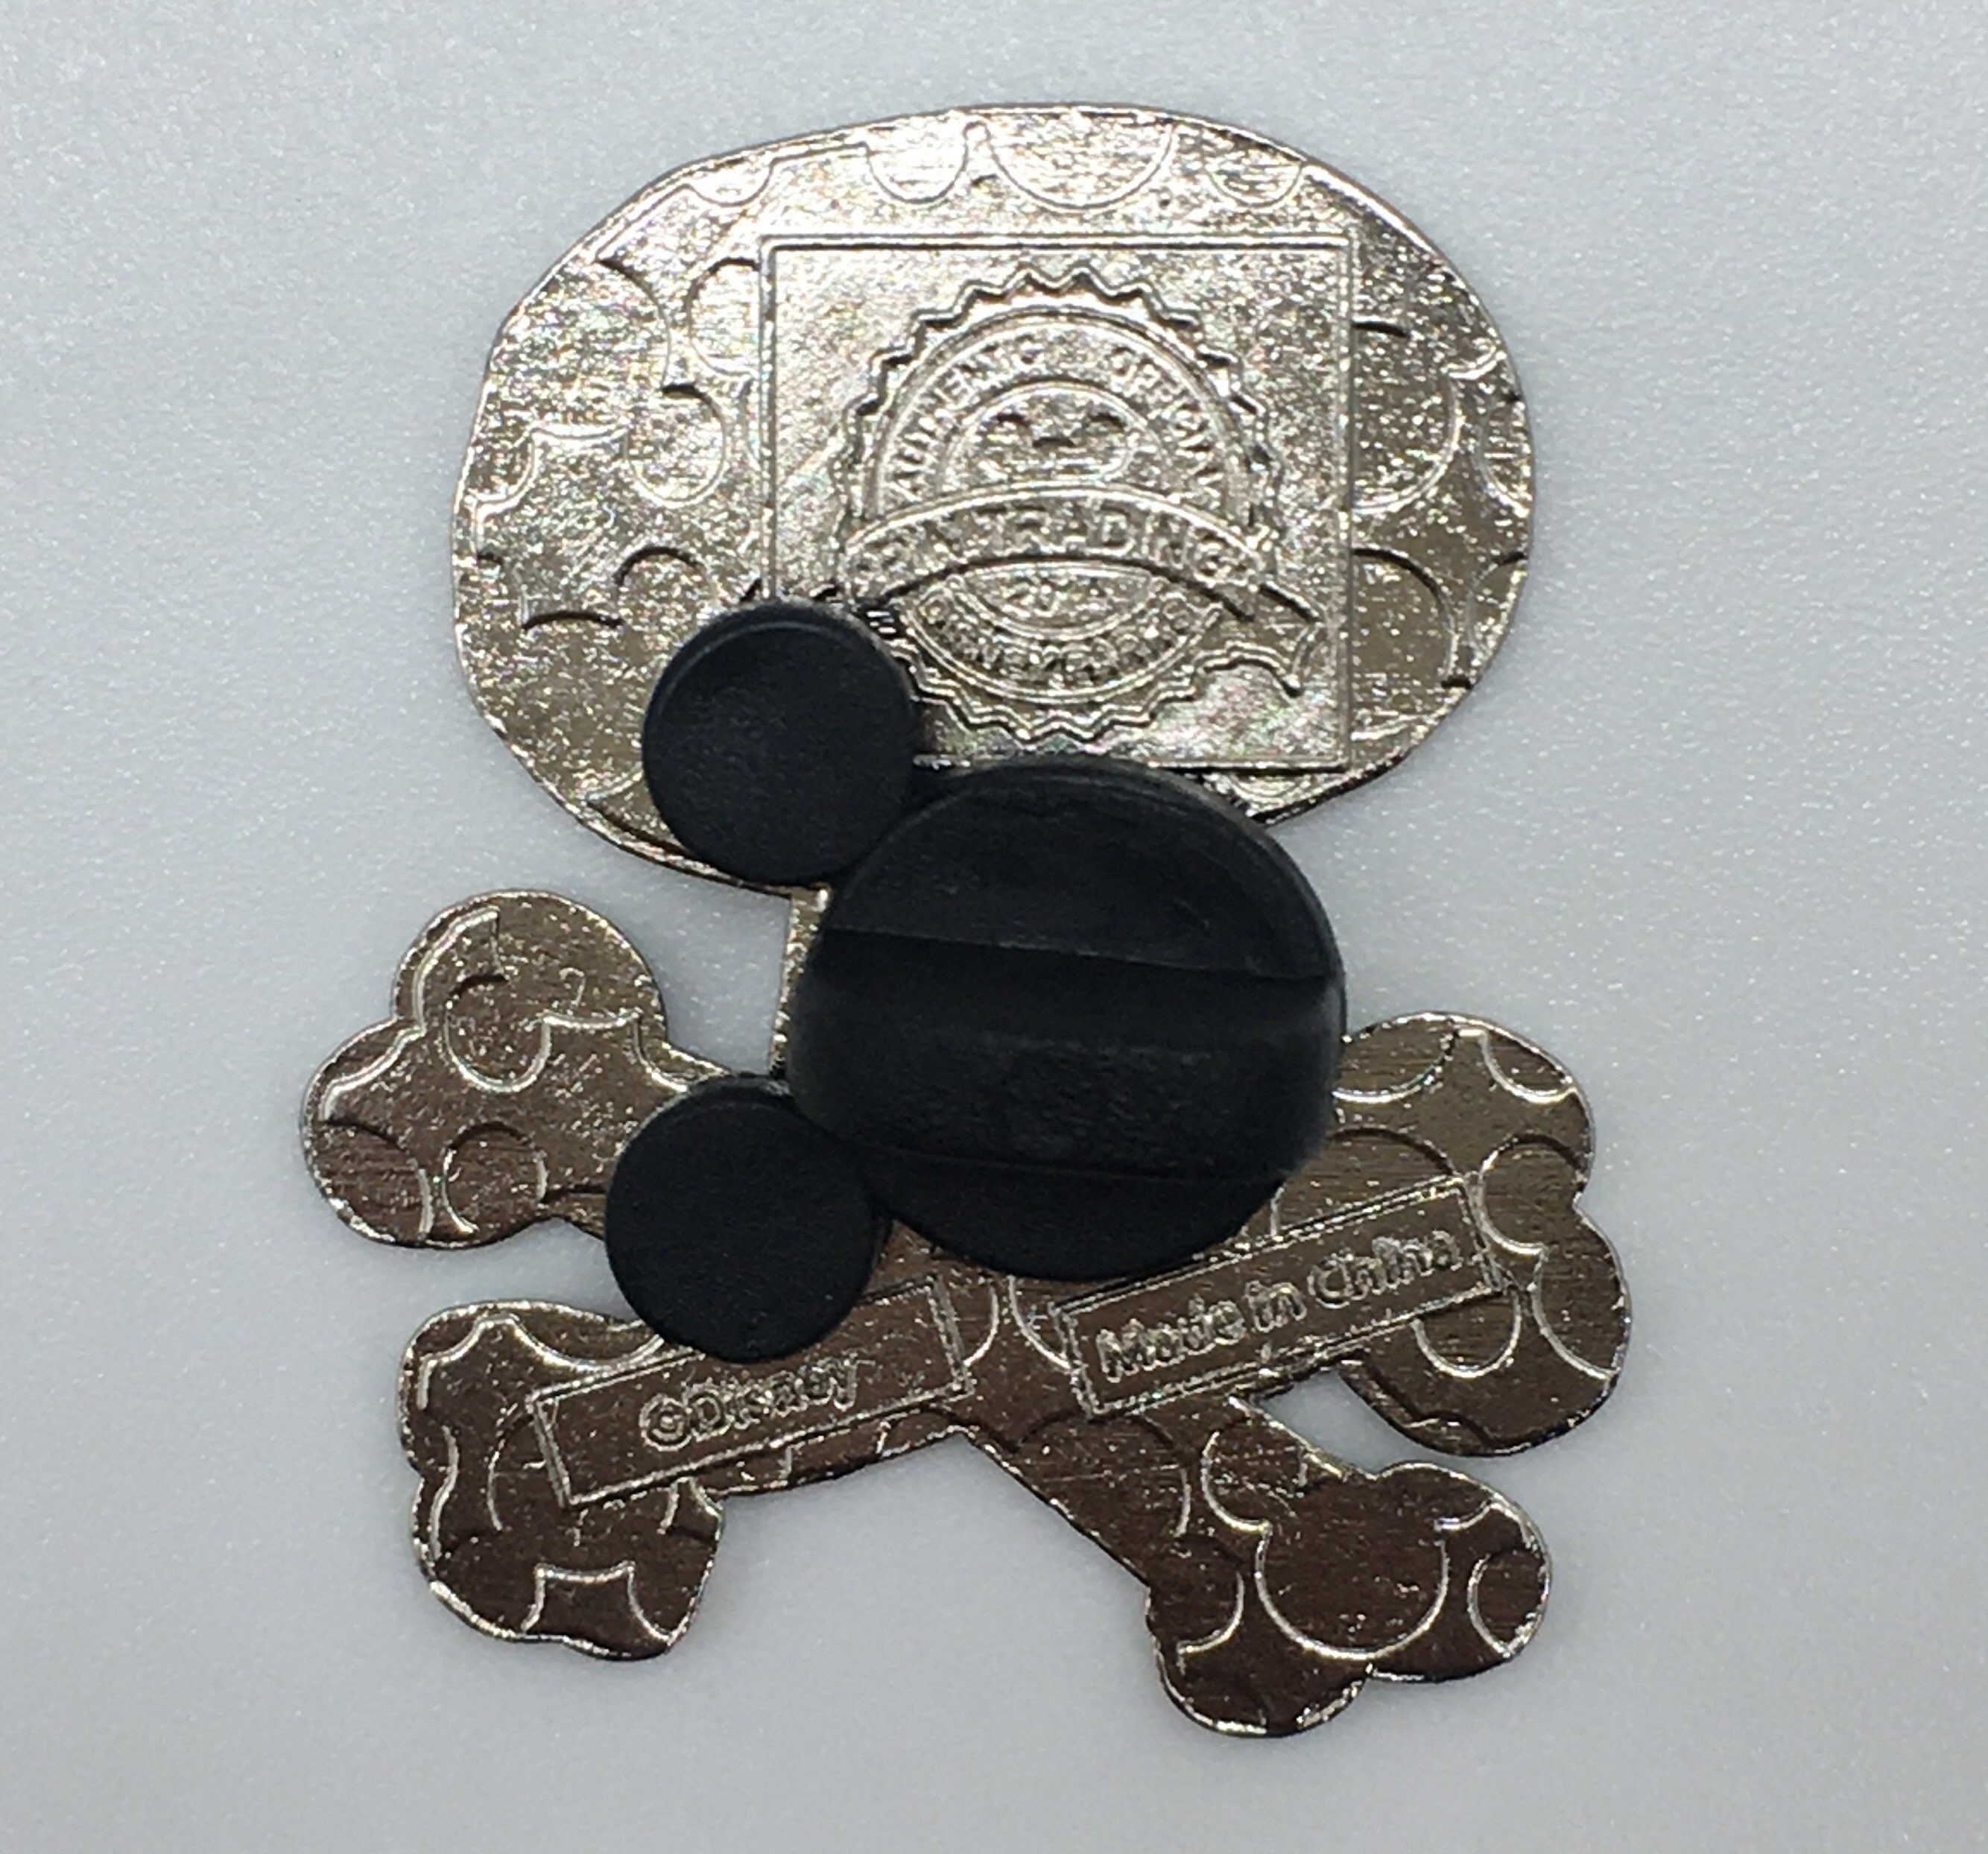 Skull pin Disney pin skull enamel pin skull jewelry | Etsy